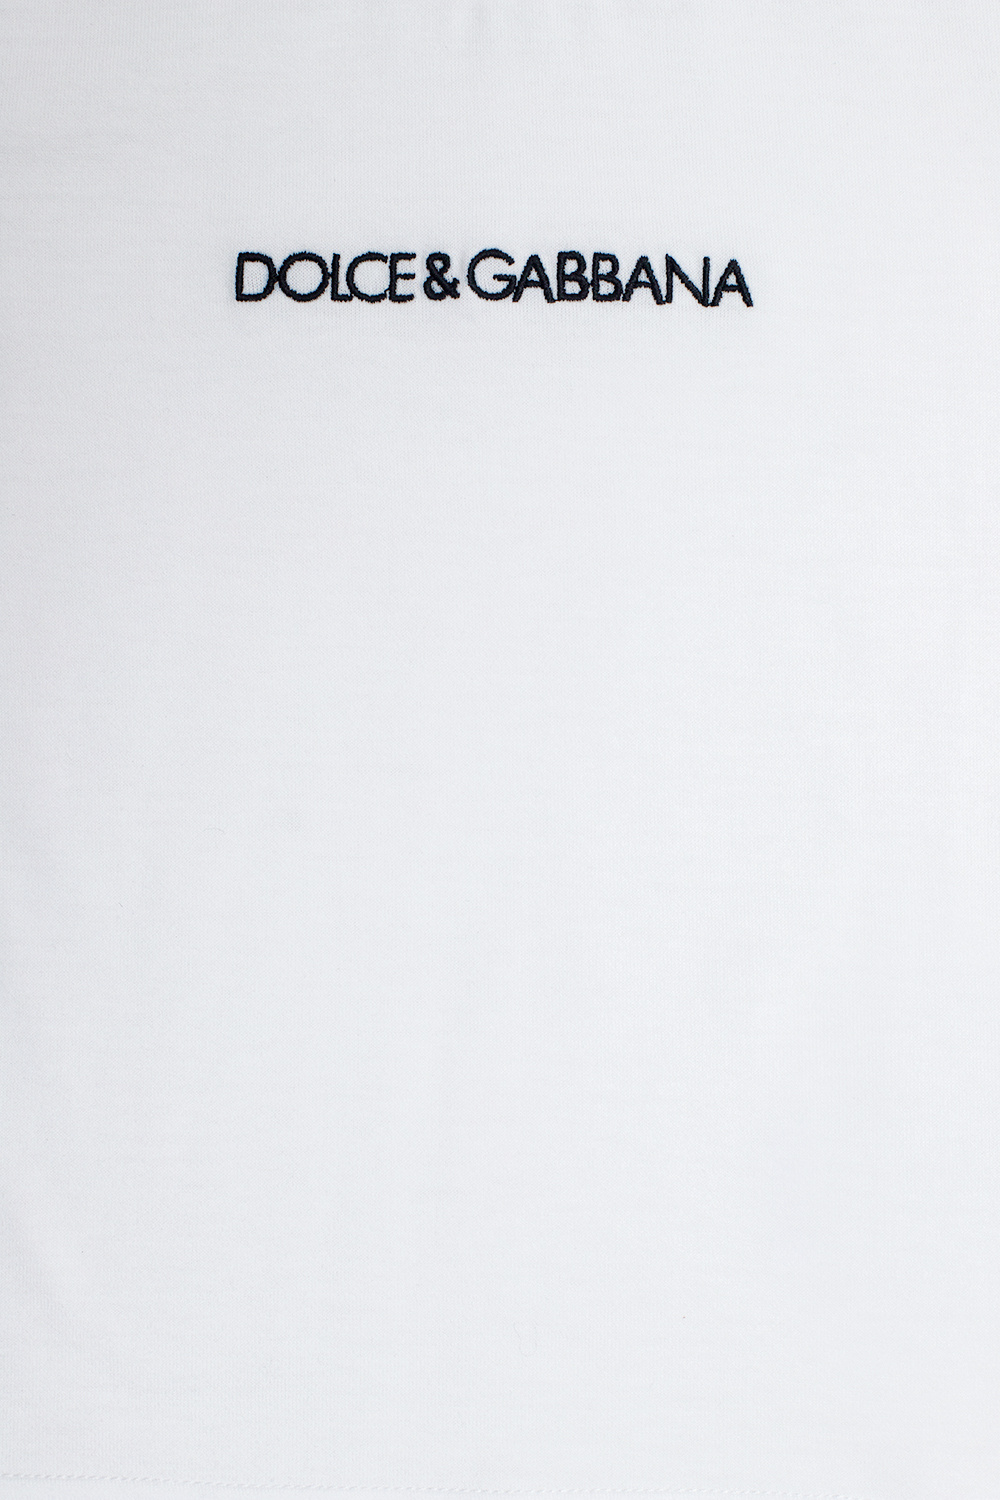 Dolce & Gabbana Kids Eyewear T-shirt